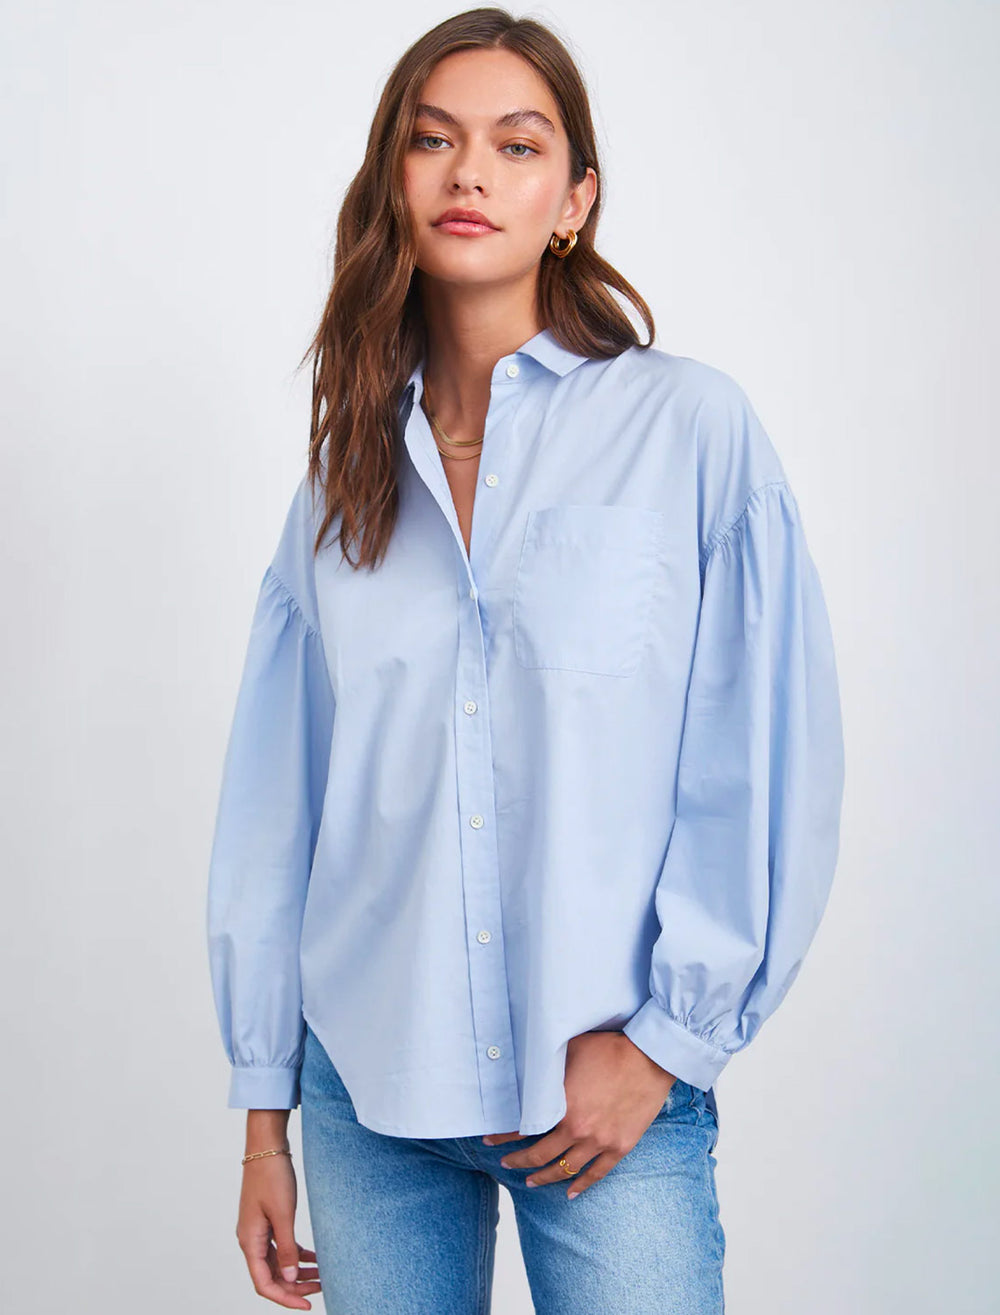 Model wearing Rails' janae shirt in blue jay.